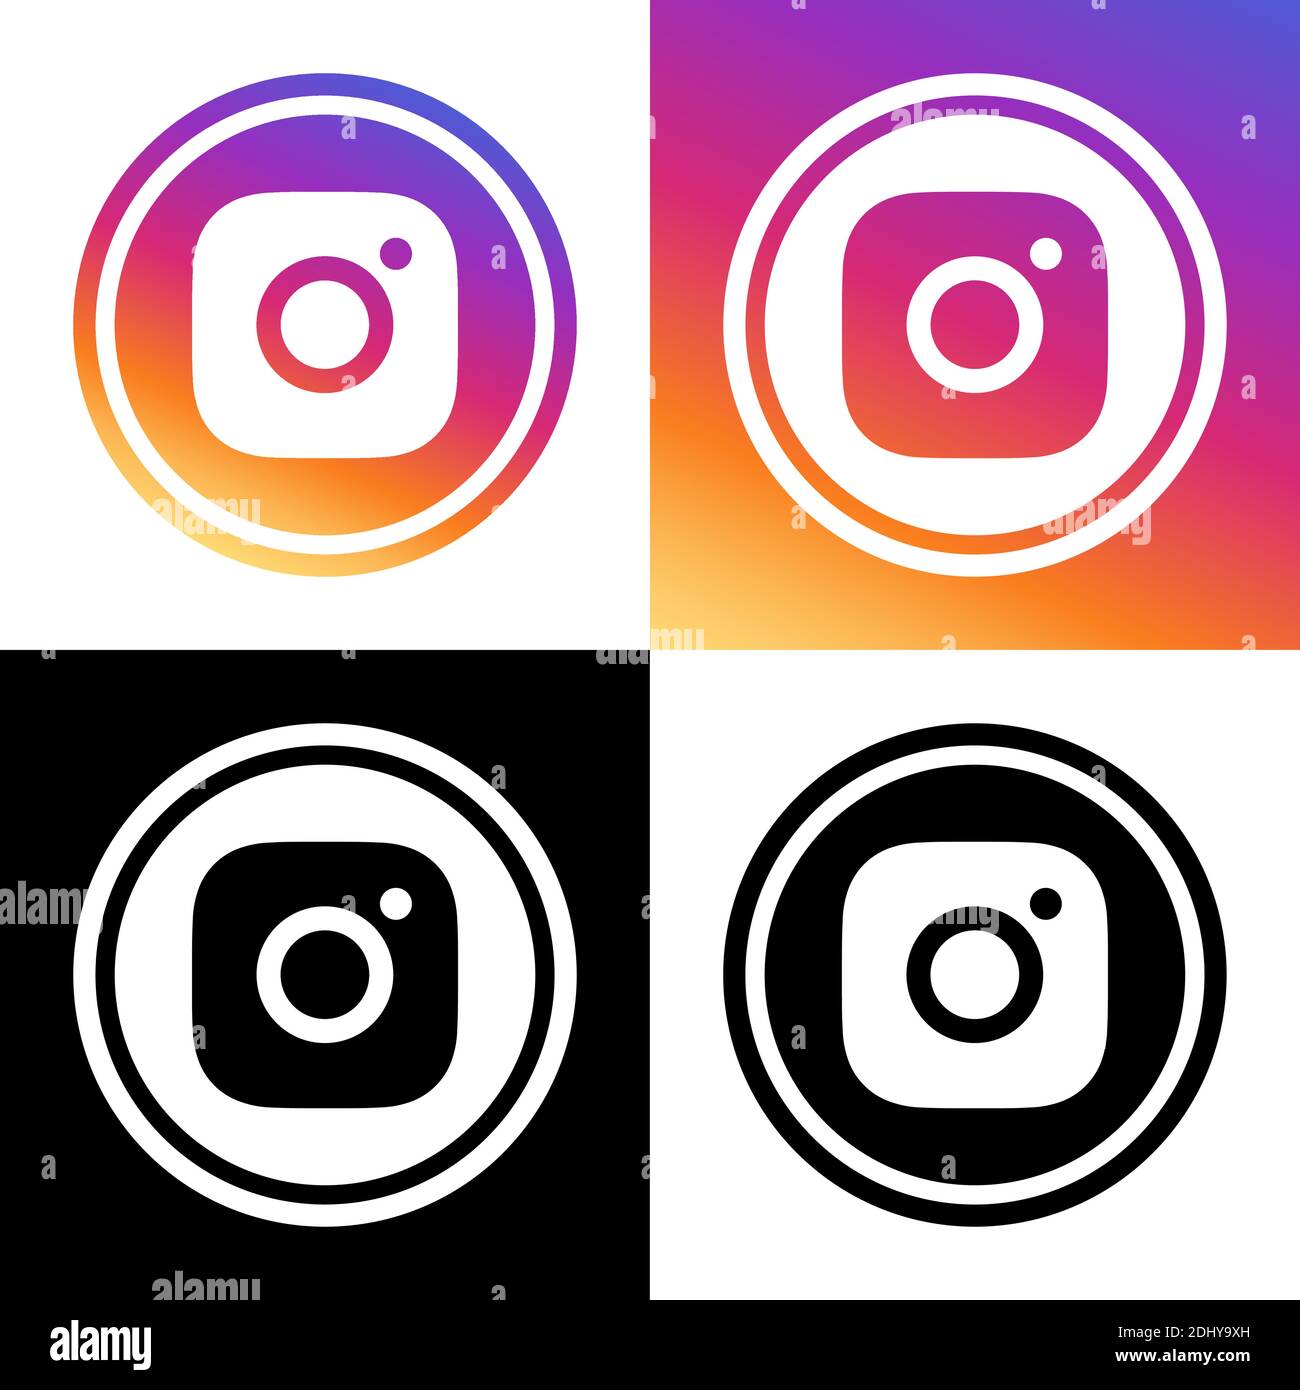 Instagram Reels - chế độ xem video ngắn siêu hot đang thu hút các tín đồ mạng xã hội của tất cả lứa tuổi. Nhấn play ngay để tham gia vào cuộc chơi và chia sẻ những khoảnh khắc vui nhộn của bạn đến hàng triệu người dùng trên toàn cầu qua Reels.